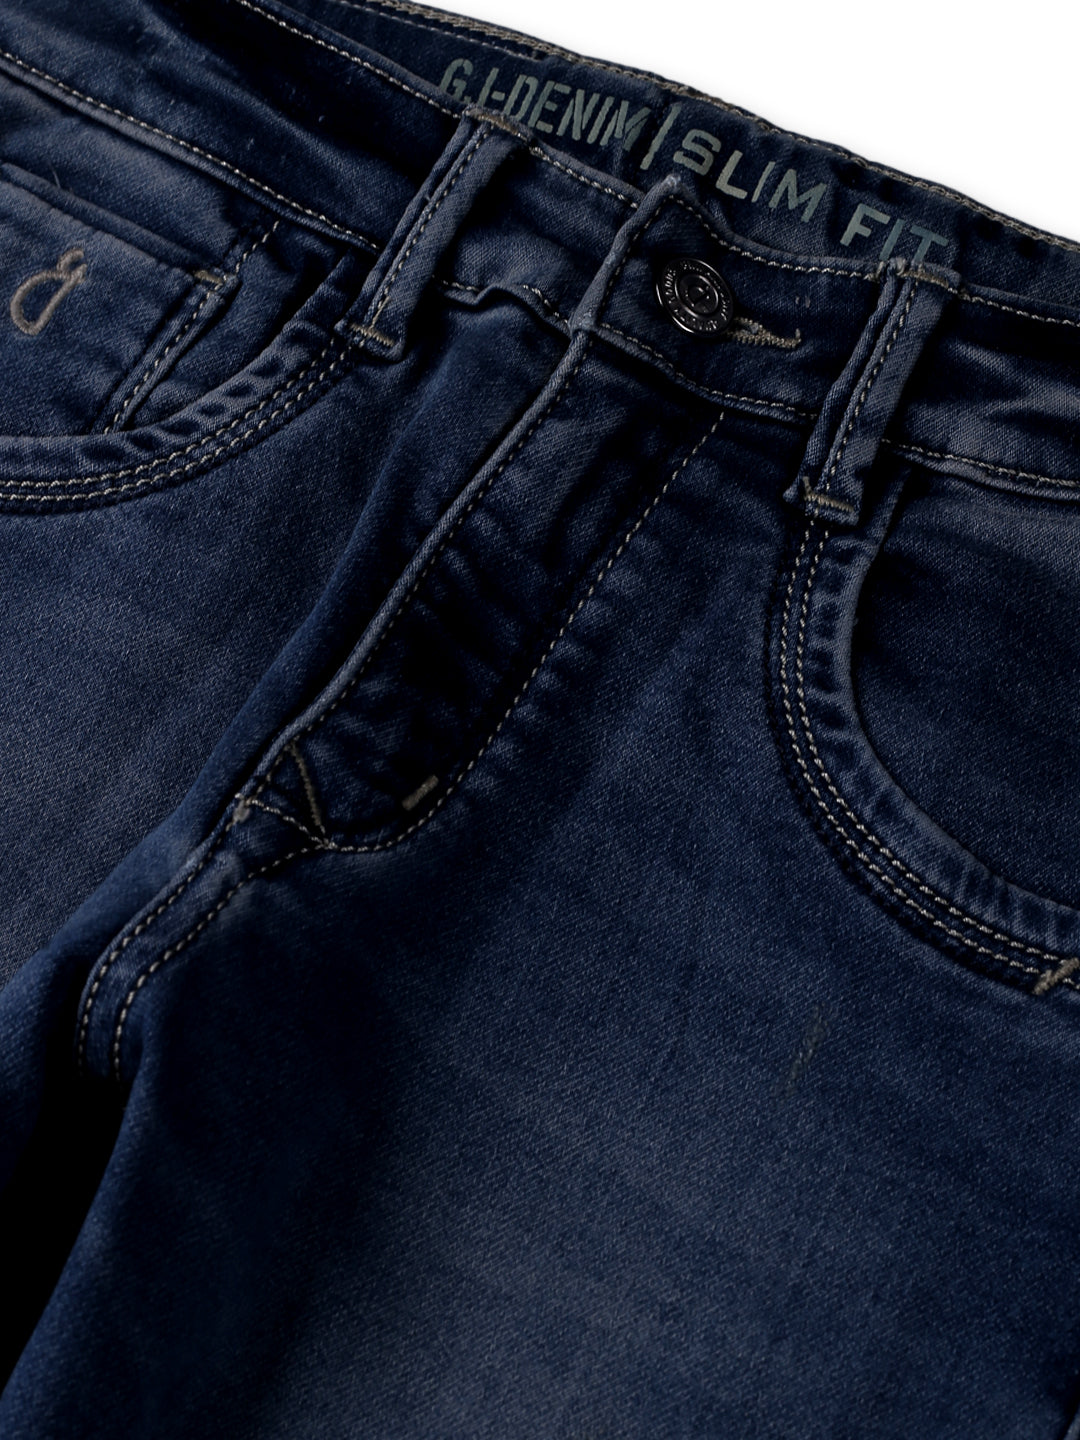 Boys Blue Cotton Denim Solid Jeans